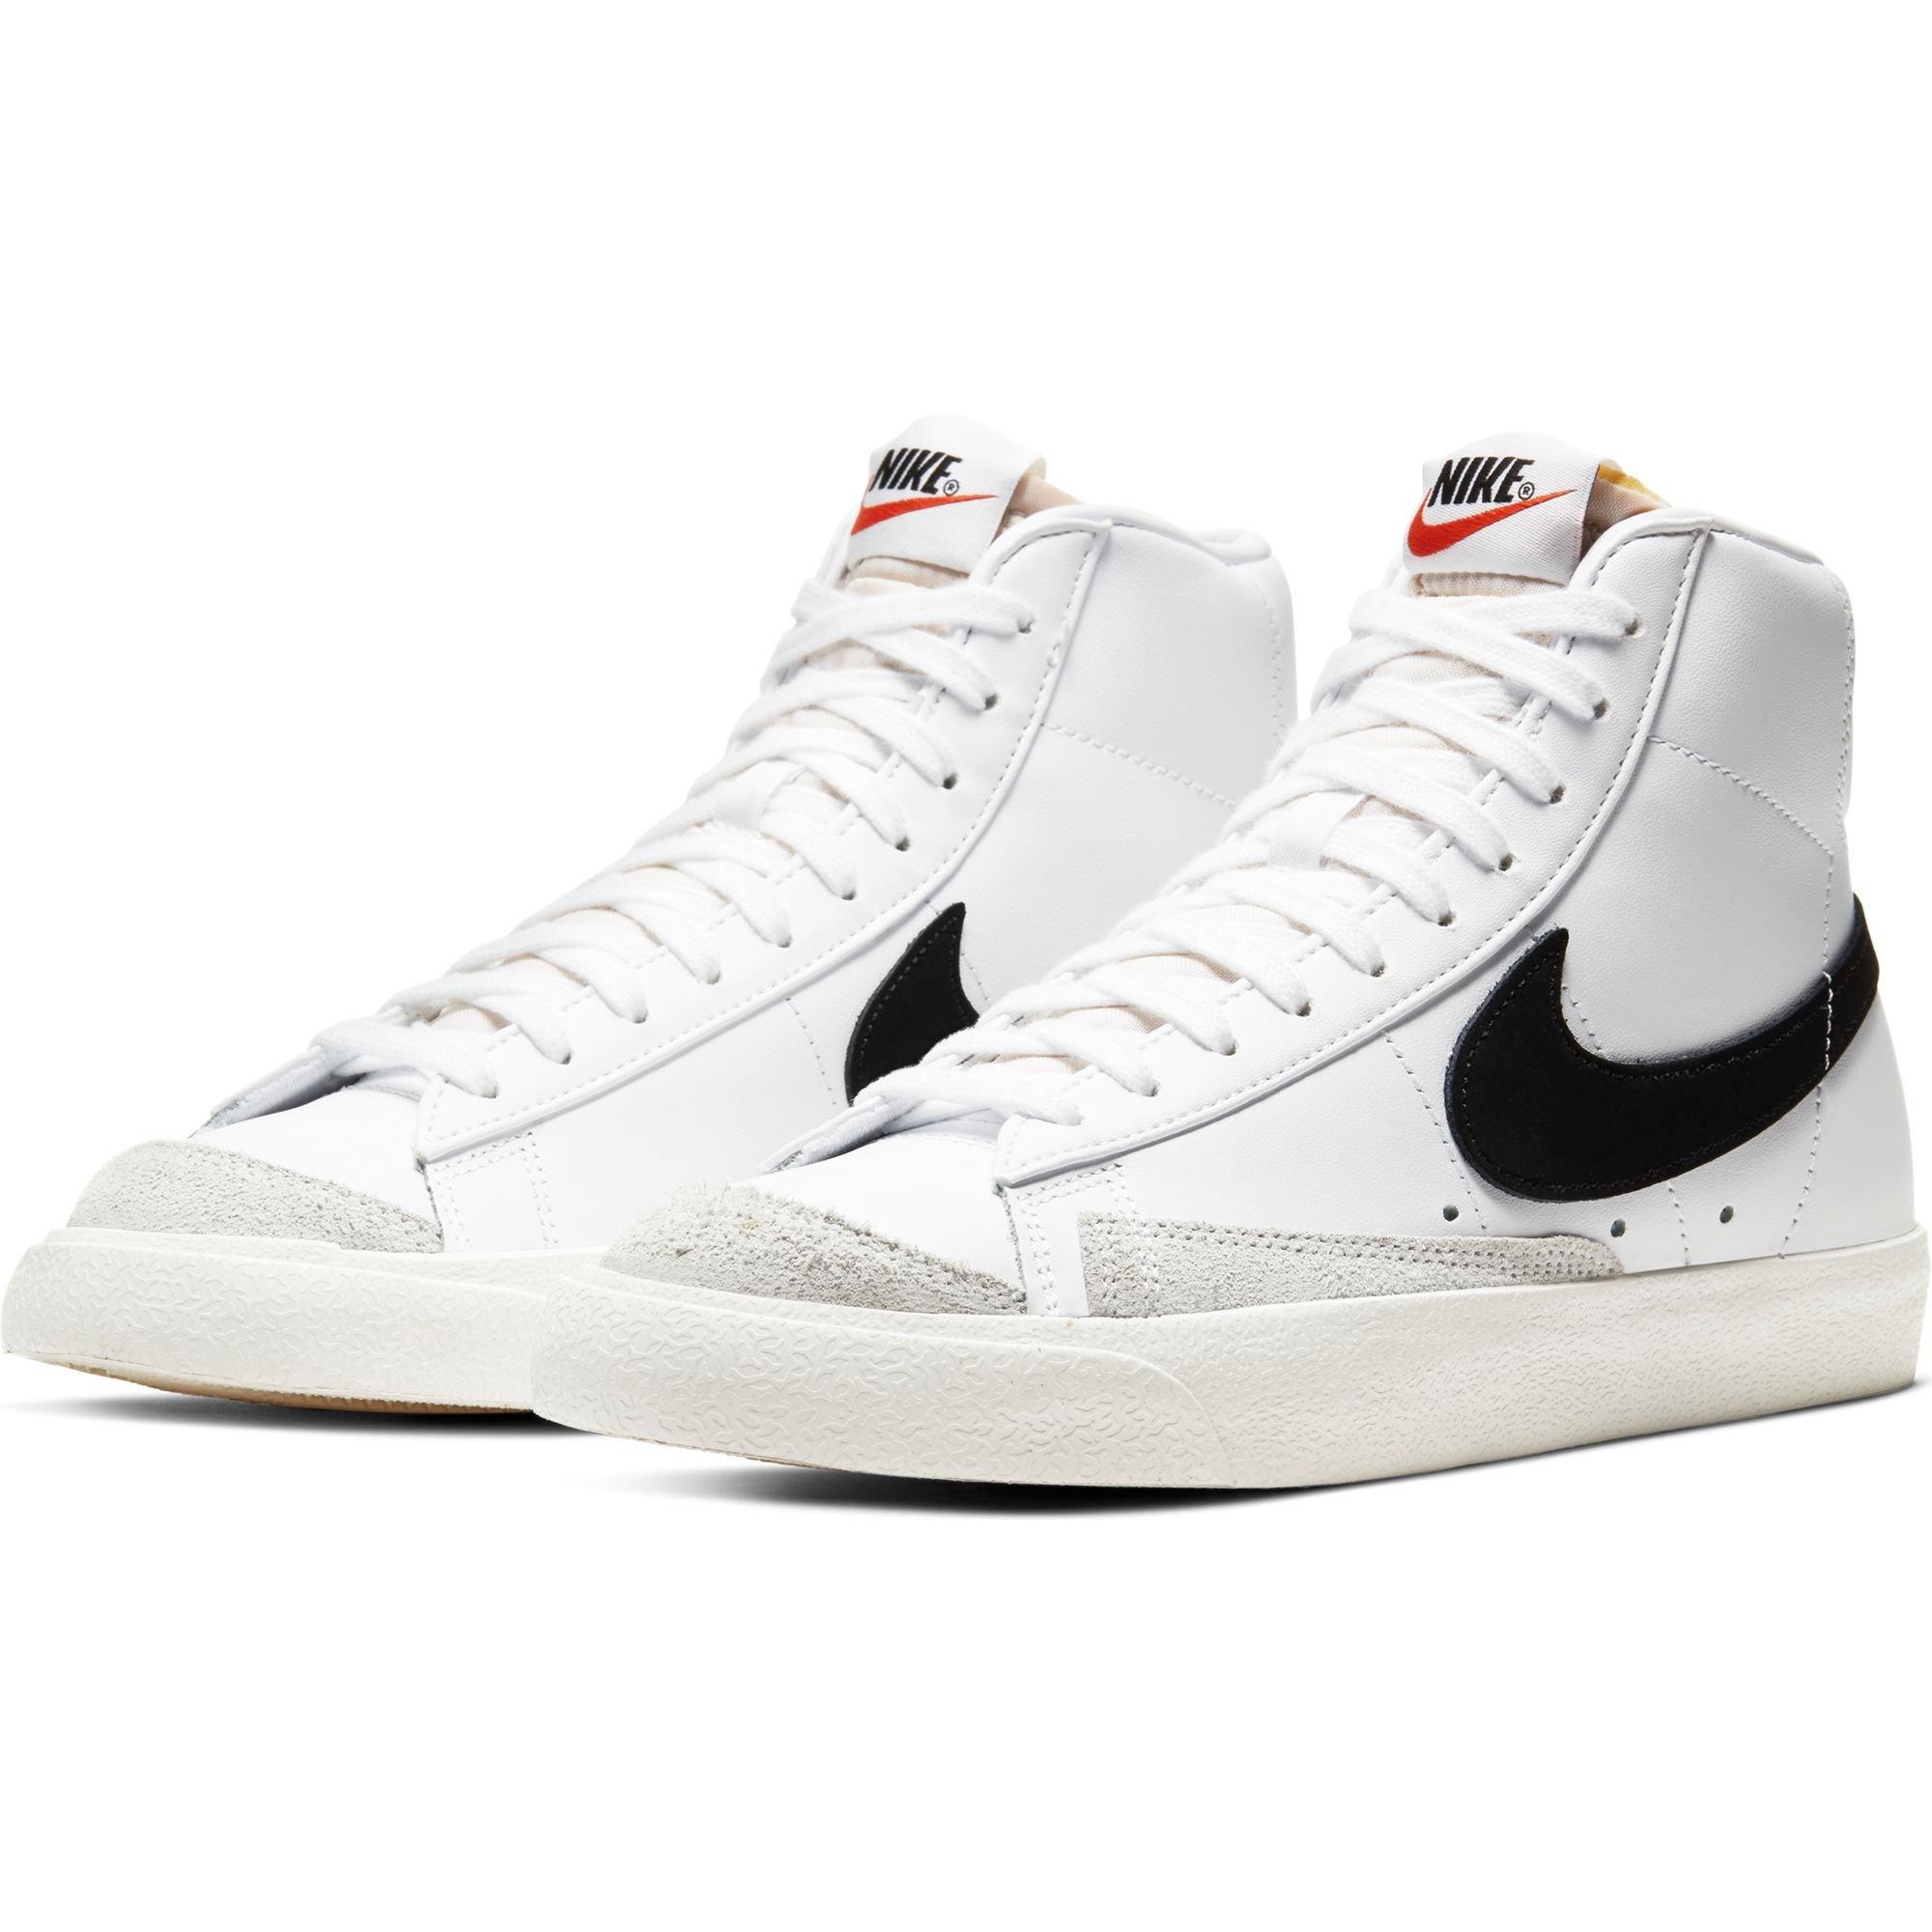 Nike Blazer Mid '77 Vintage Sneakers in White/Black